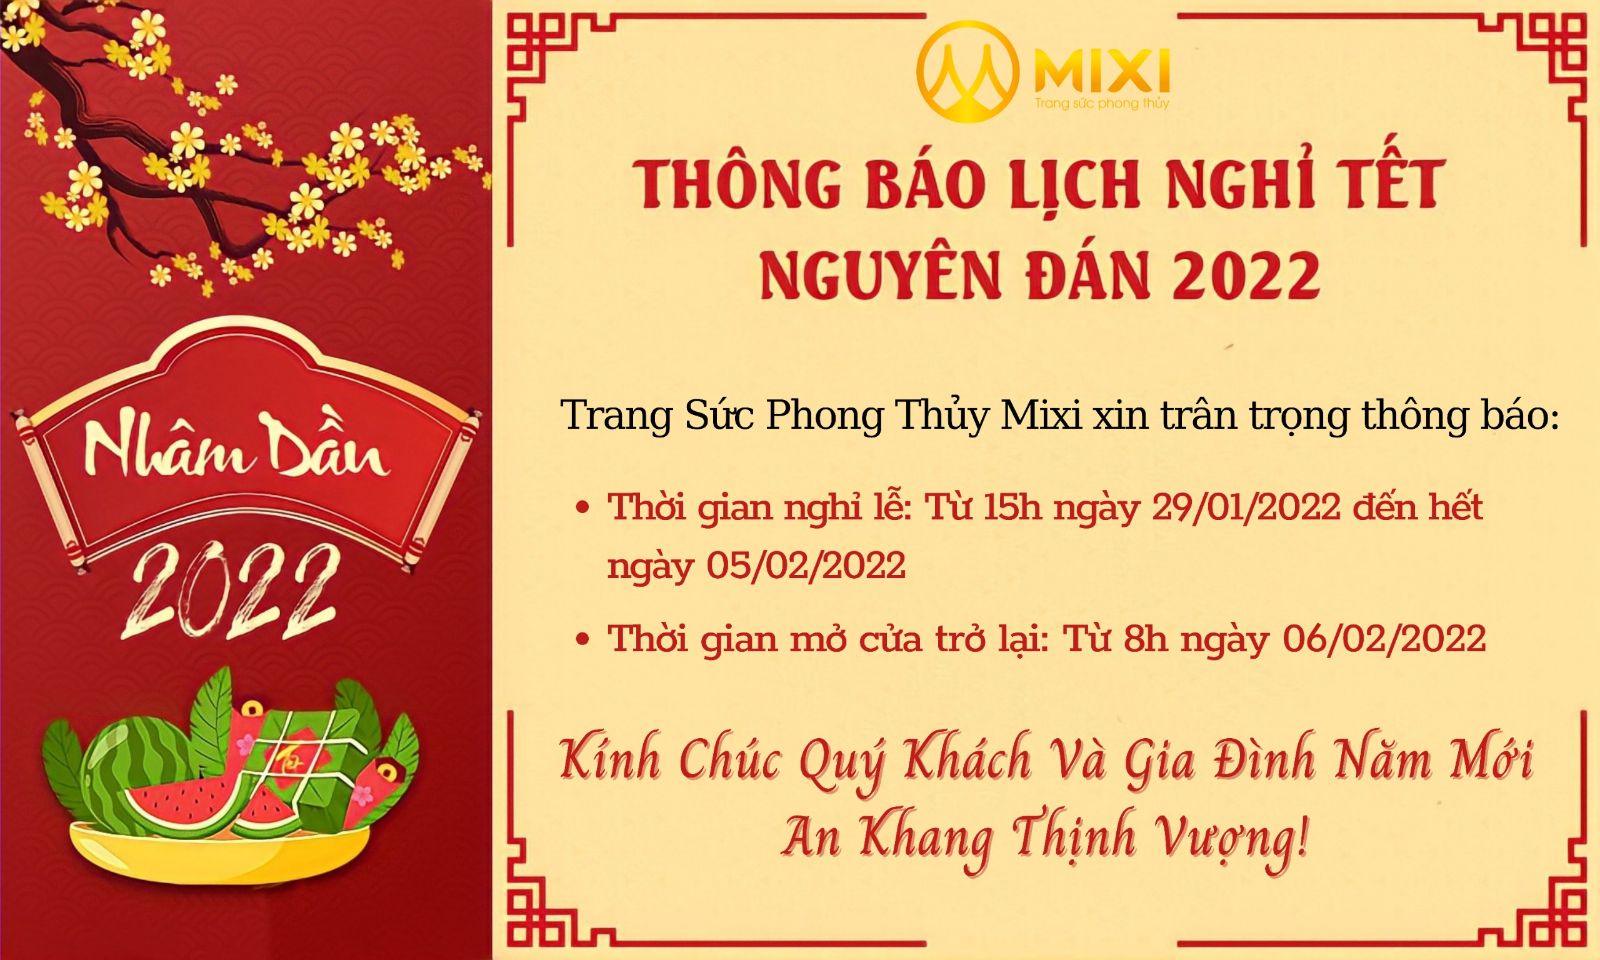 Mixi xin trân trọng thông báo Lịch nghỉ Tết Nguyên Đán 2022